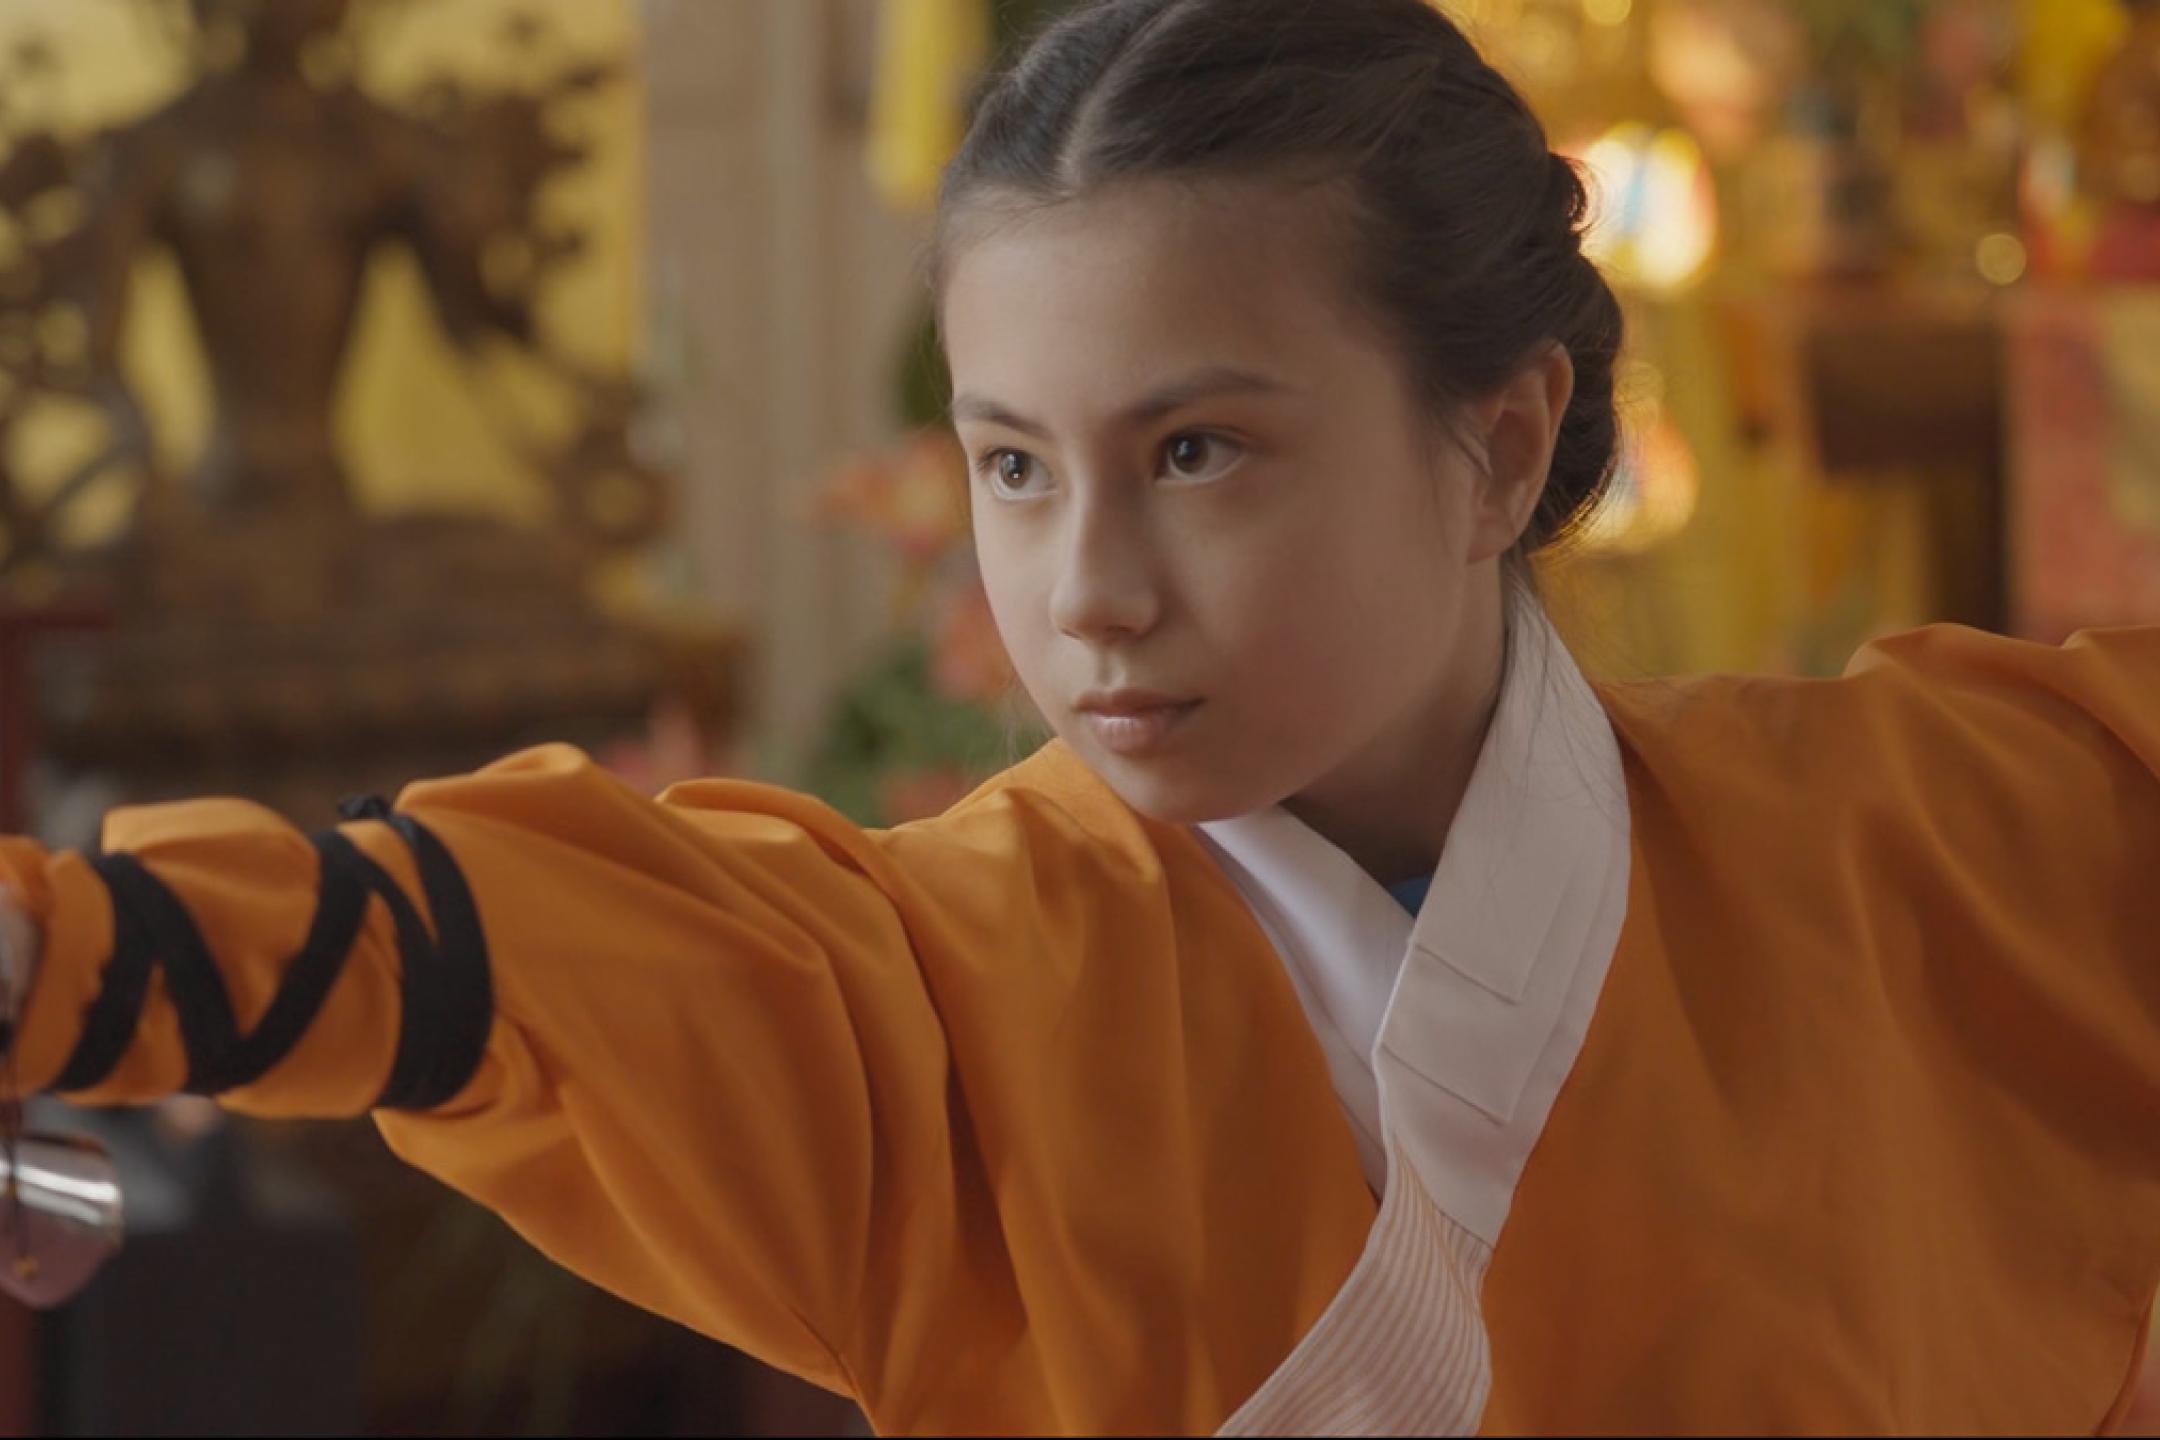 Ein Mädchen steht in einer Kung-Fu-Pose, sie trägt einen orangenen Kung-Fu-Anzug.